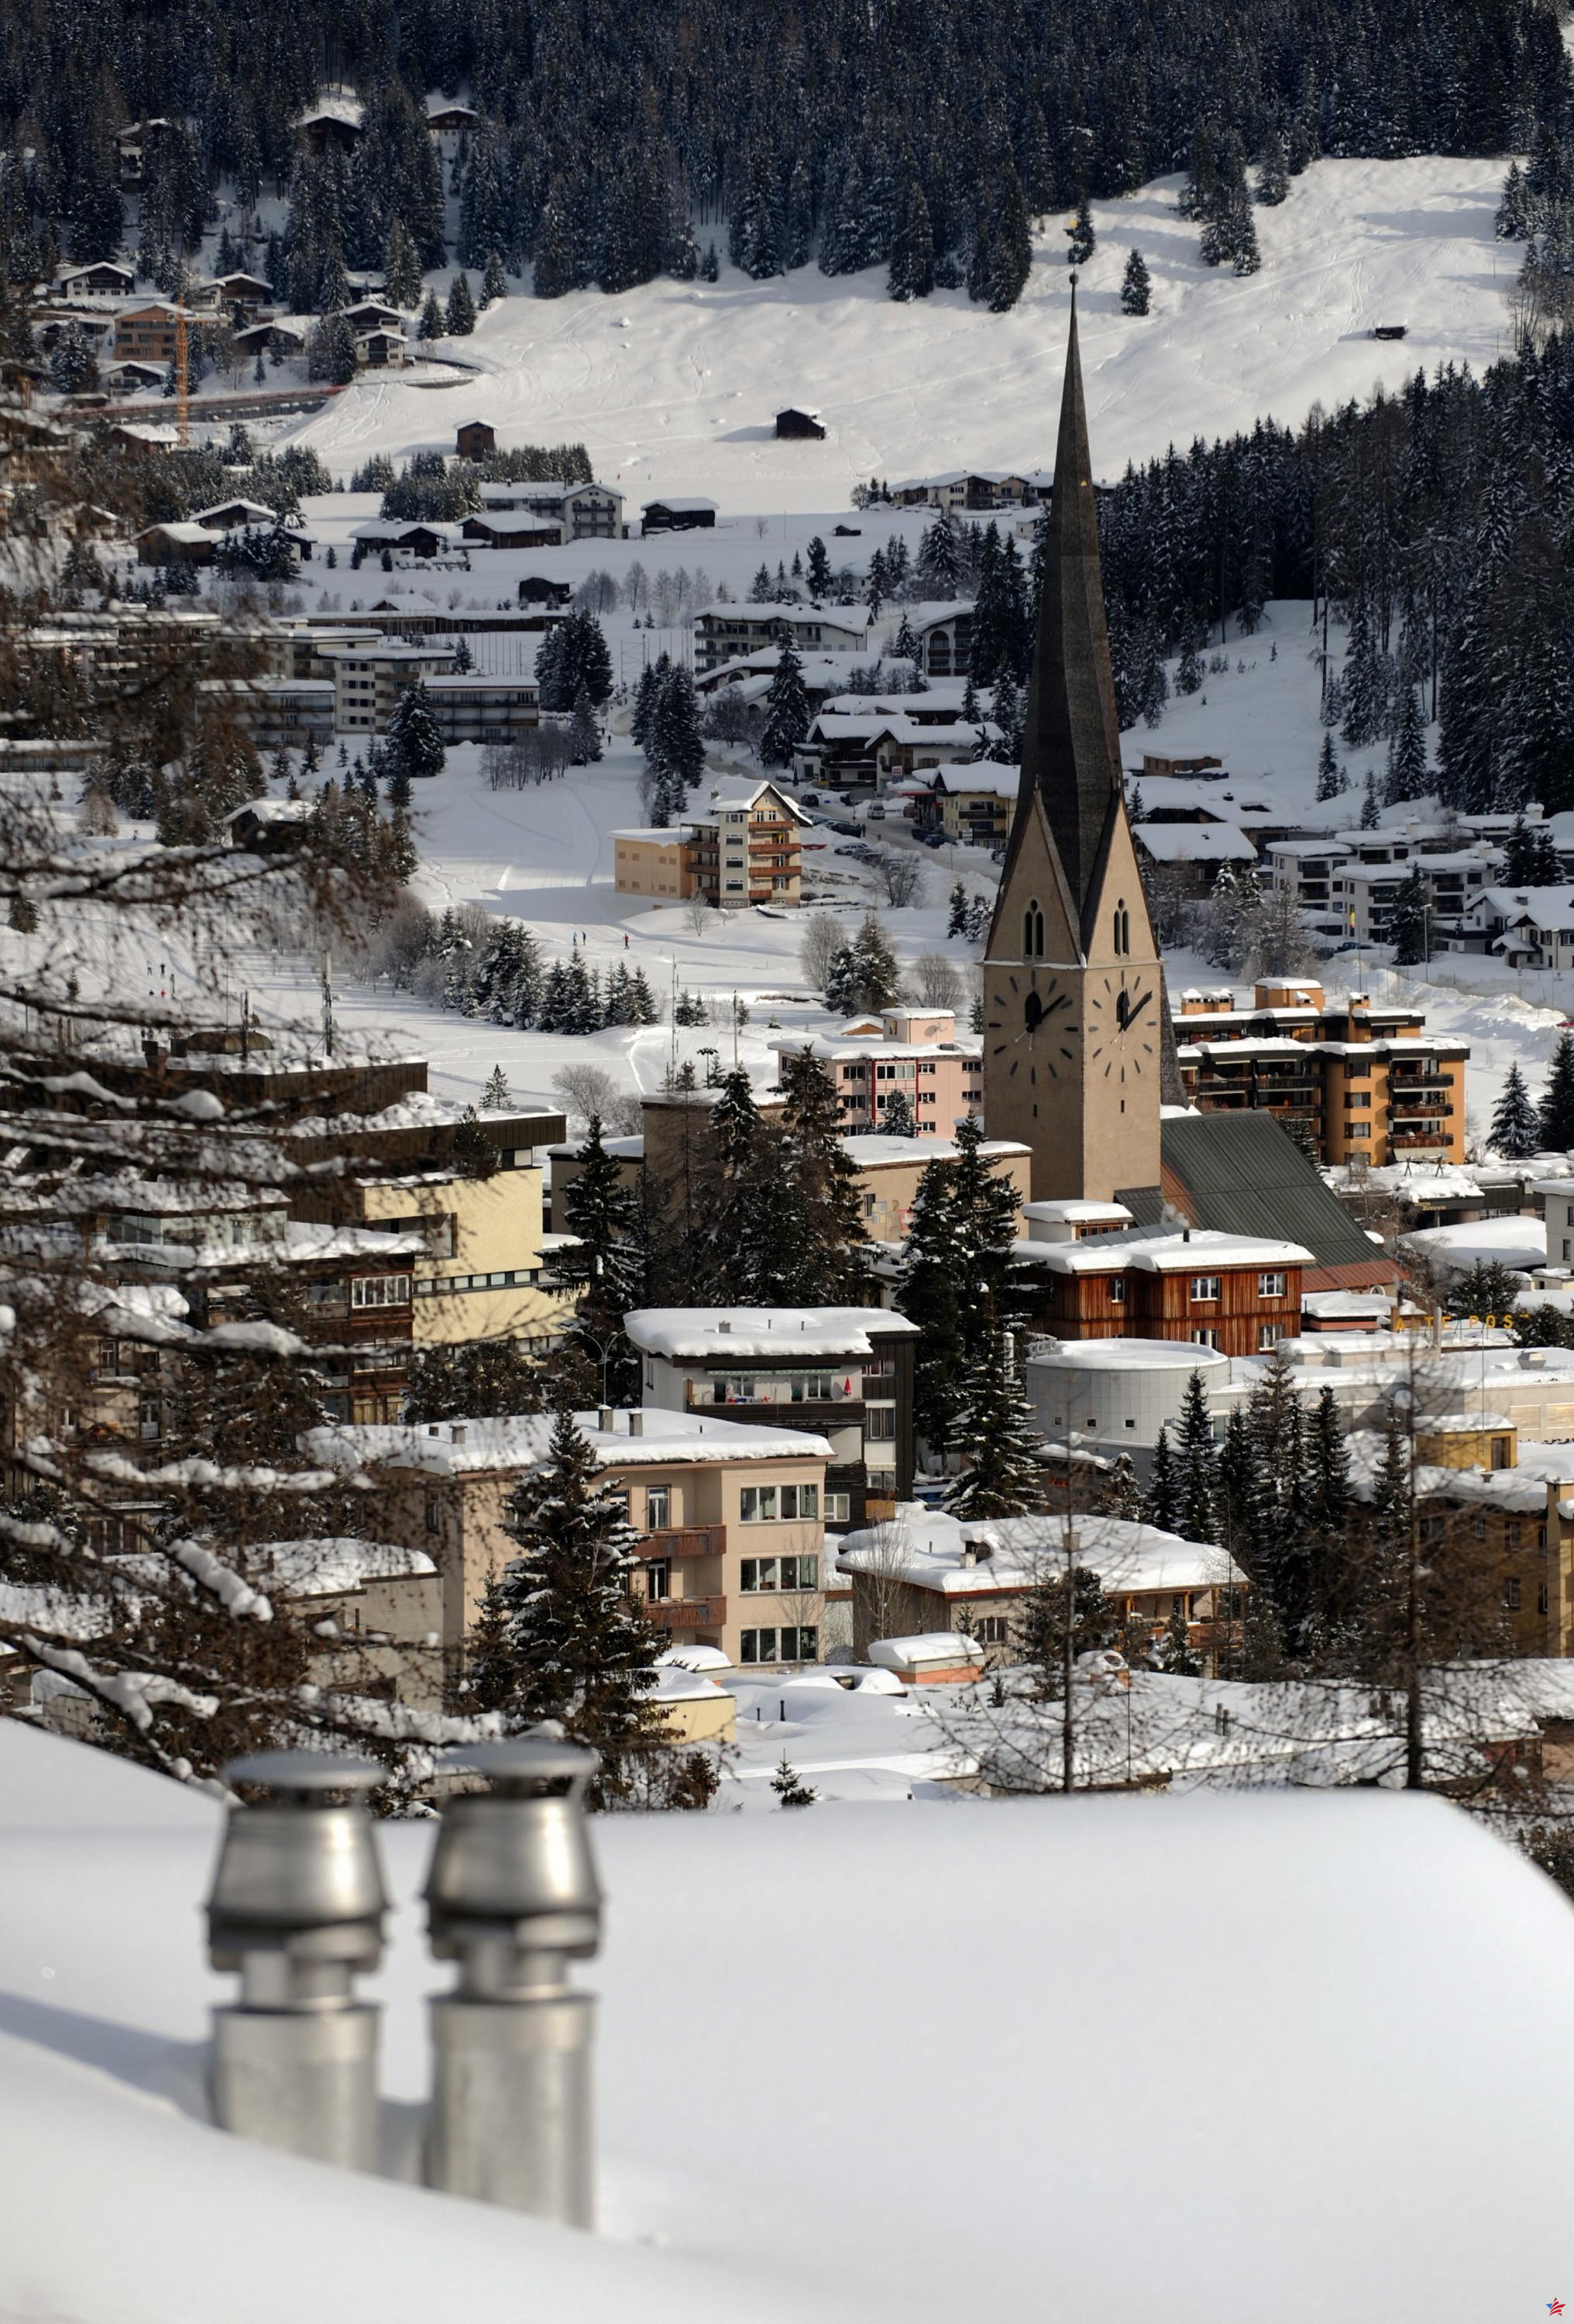 Se negaron a alquilar material para deportes de invierno a turistas judíos: se abrió una investigación en Suiza